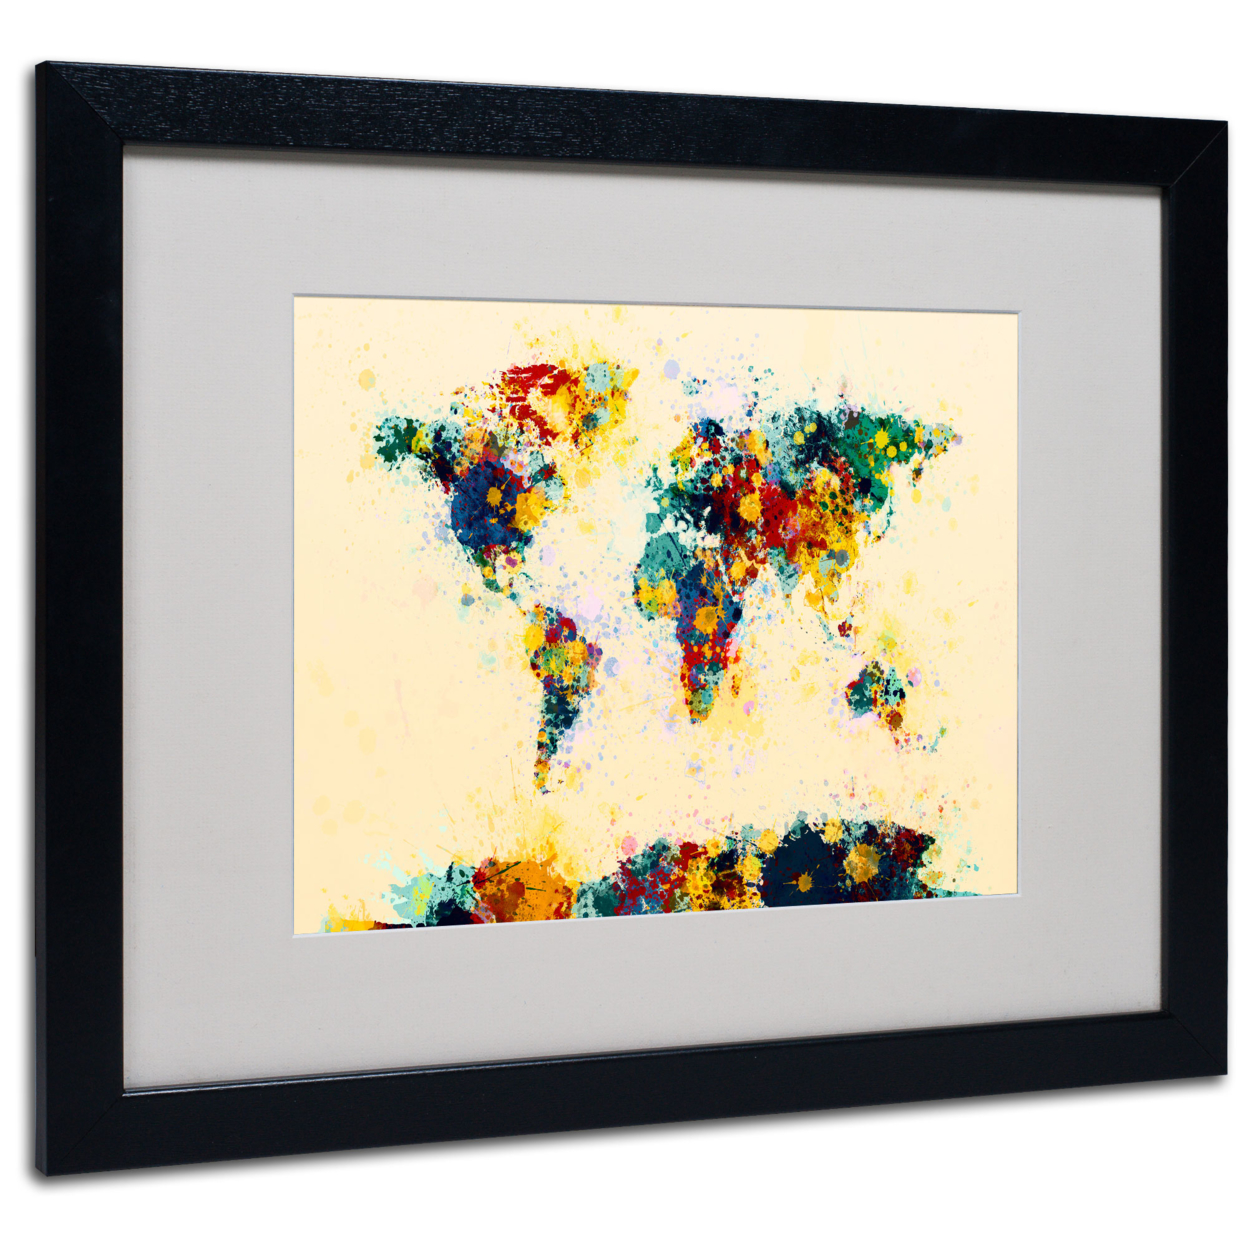 Michael Tompsett 'World Map Splashes' Black Wooden Framed Art 18 X 22 Inches